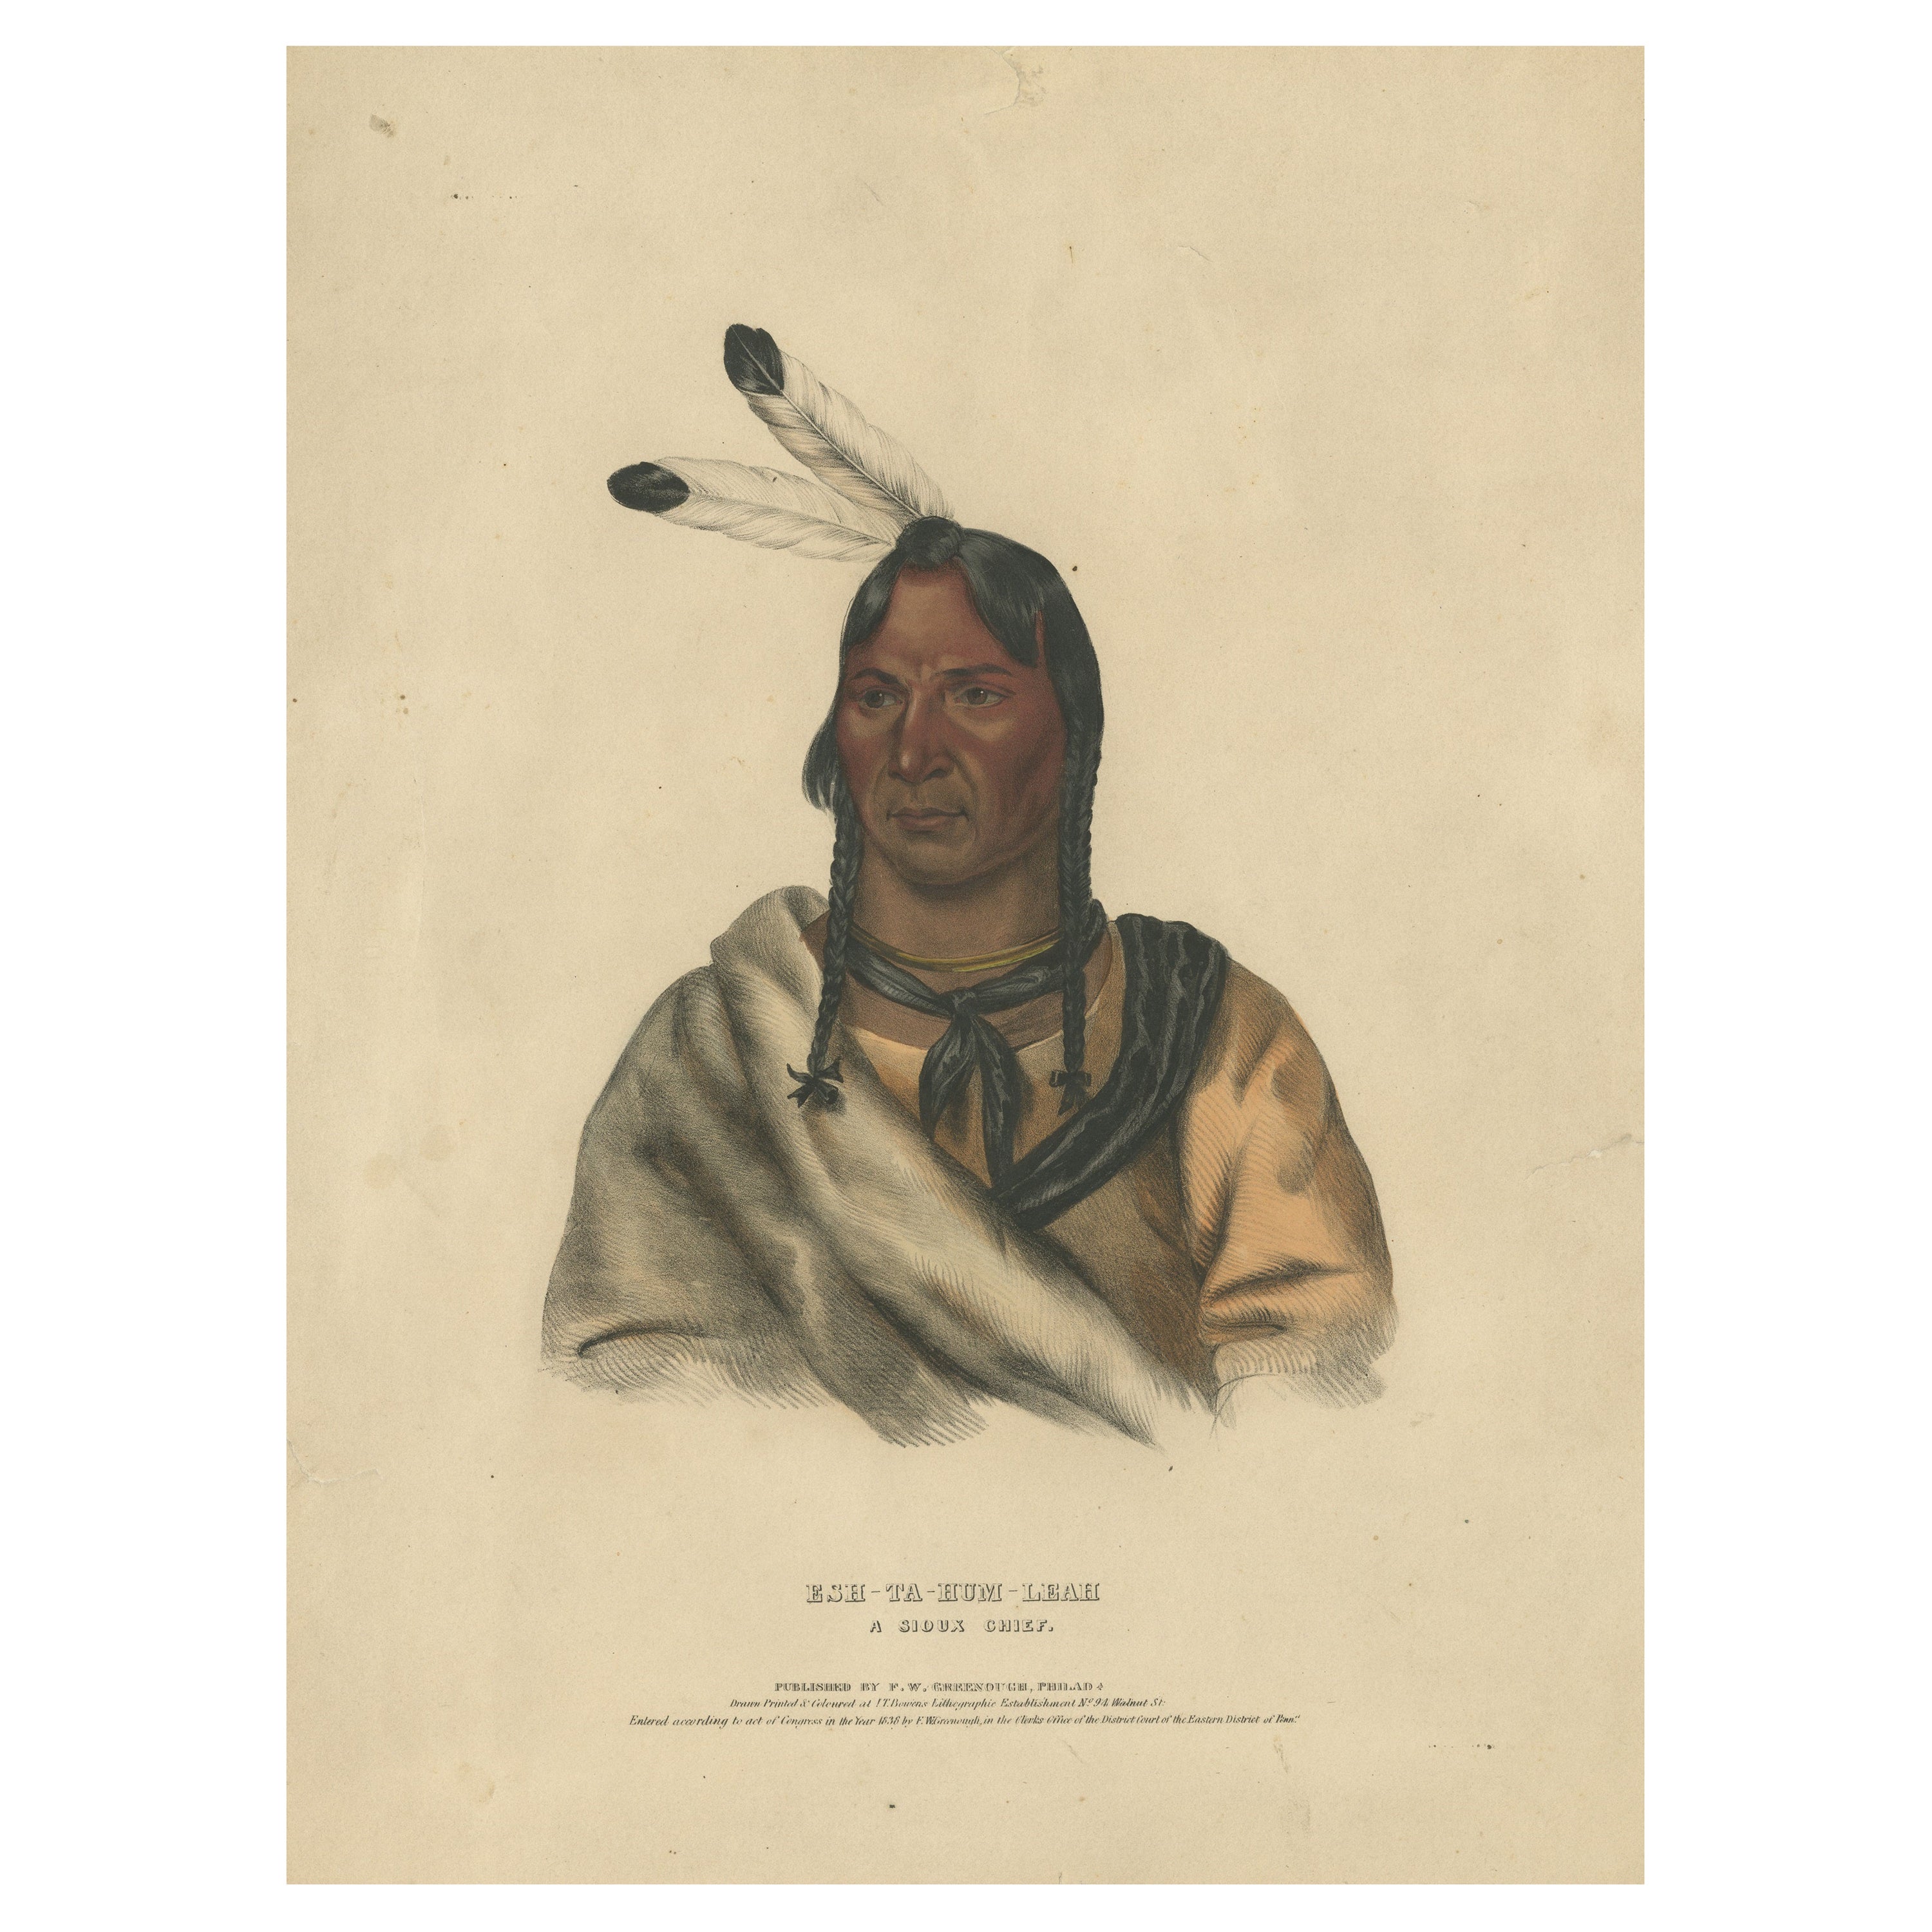 Großer antiker Druck von Esh-Ta-Hum-Leah, einem Sioux-Häuptling, um 1838